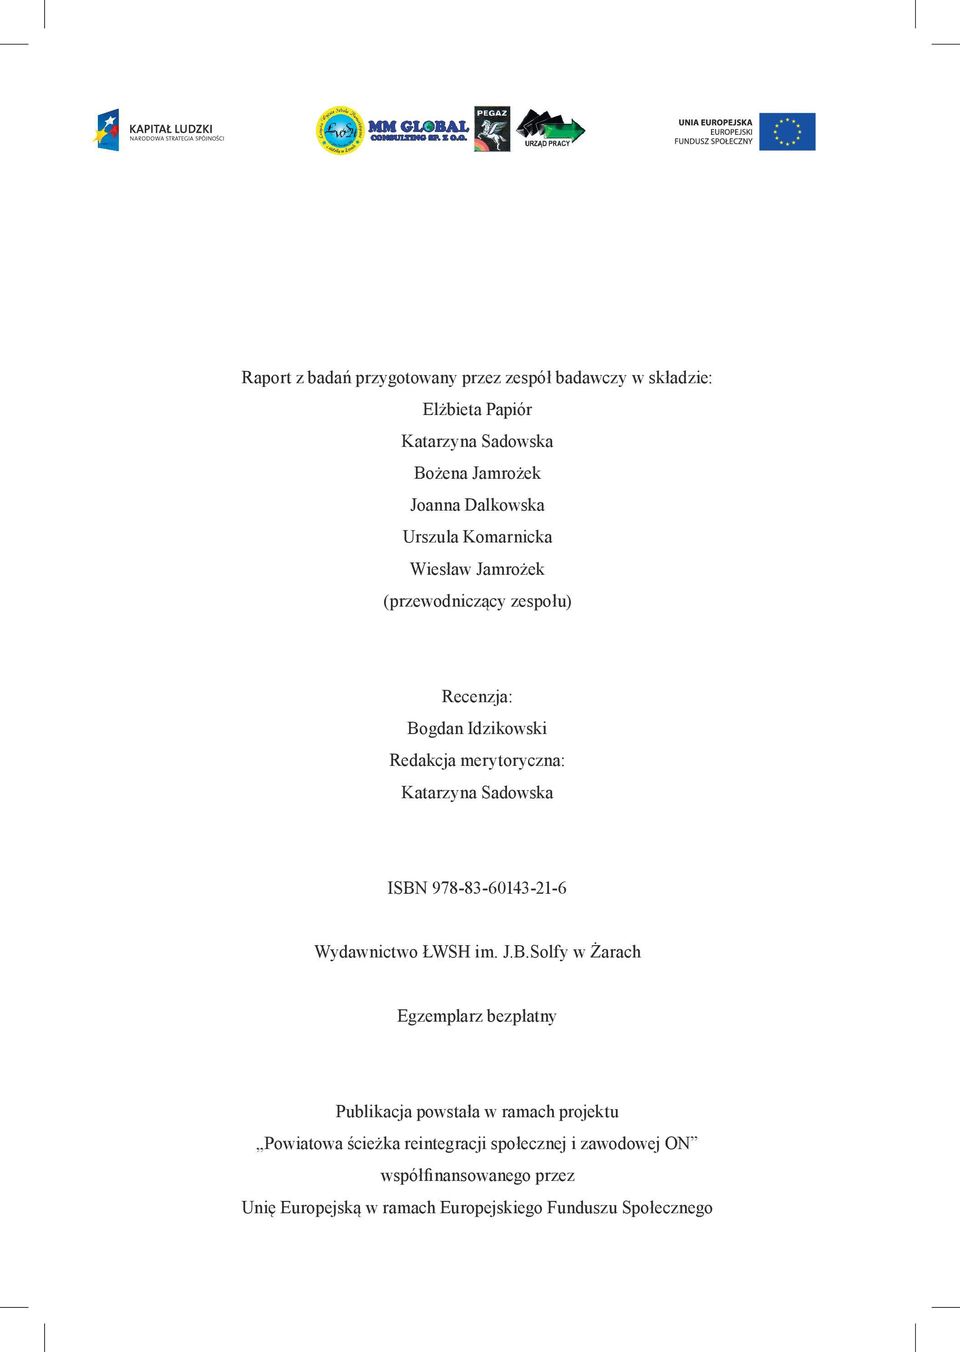 ISBN 978-83-60143-21-6 Wydawnictwo ŁWSH im. J.B.Solfy w Żarach Egzemplarz bezpłatny Publikacja powstała w ramach projektu